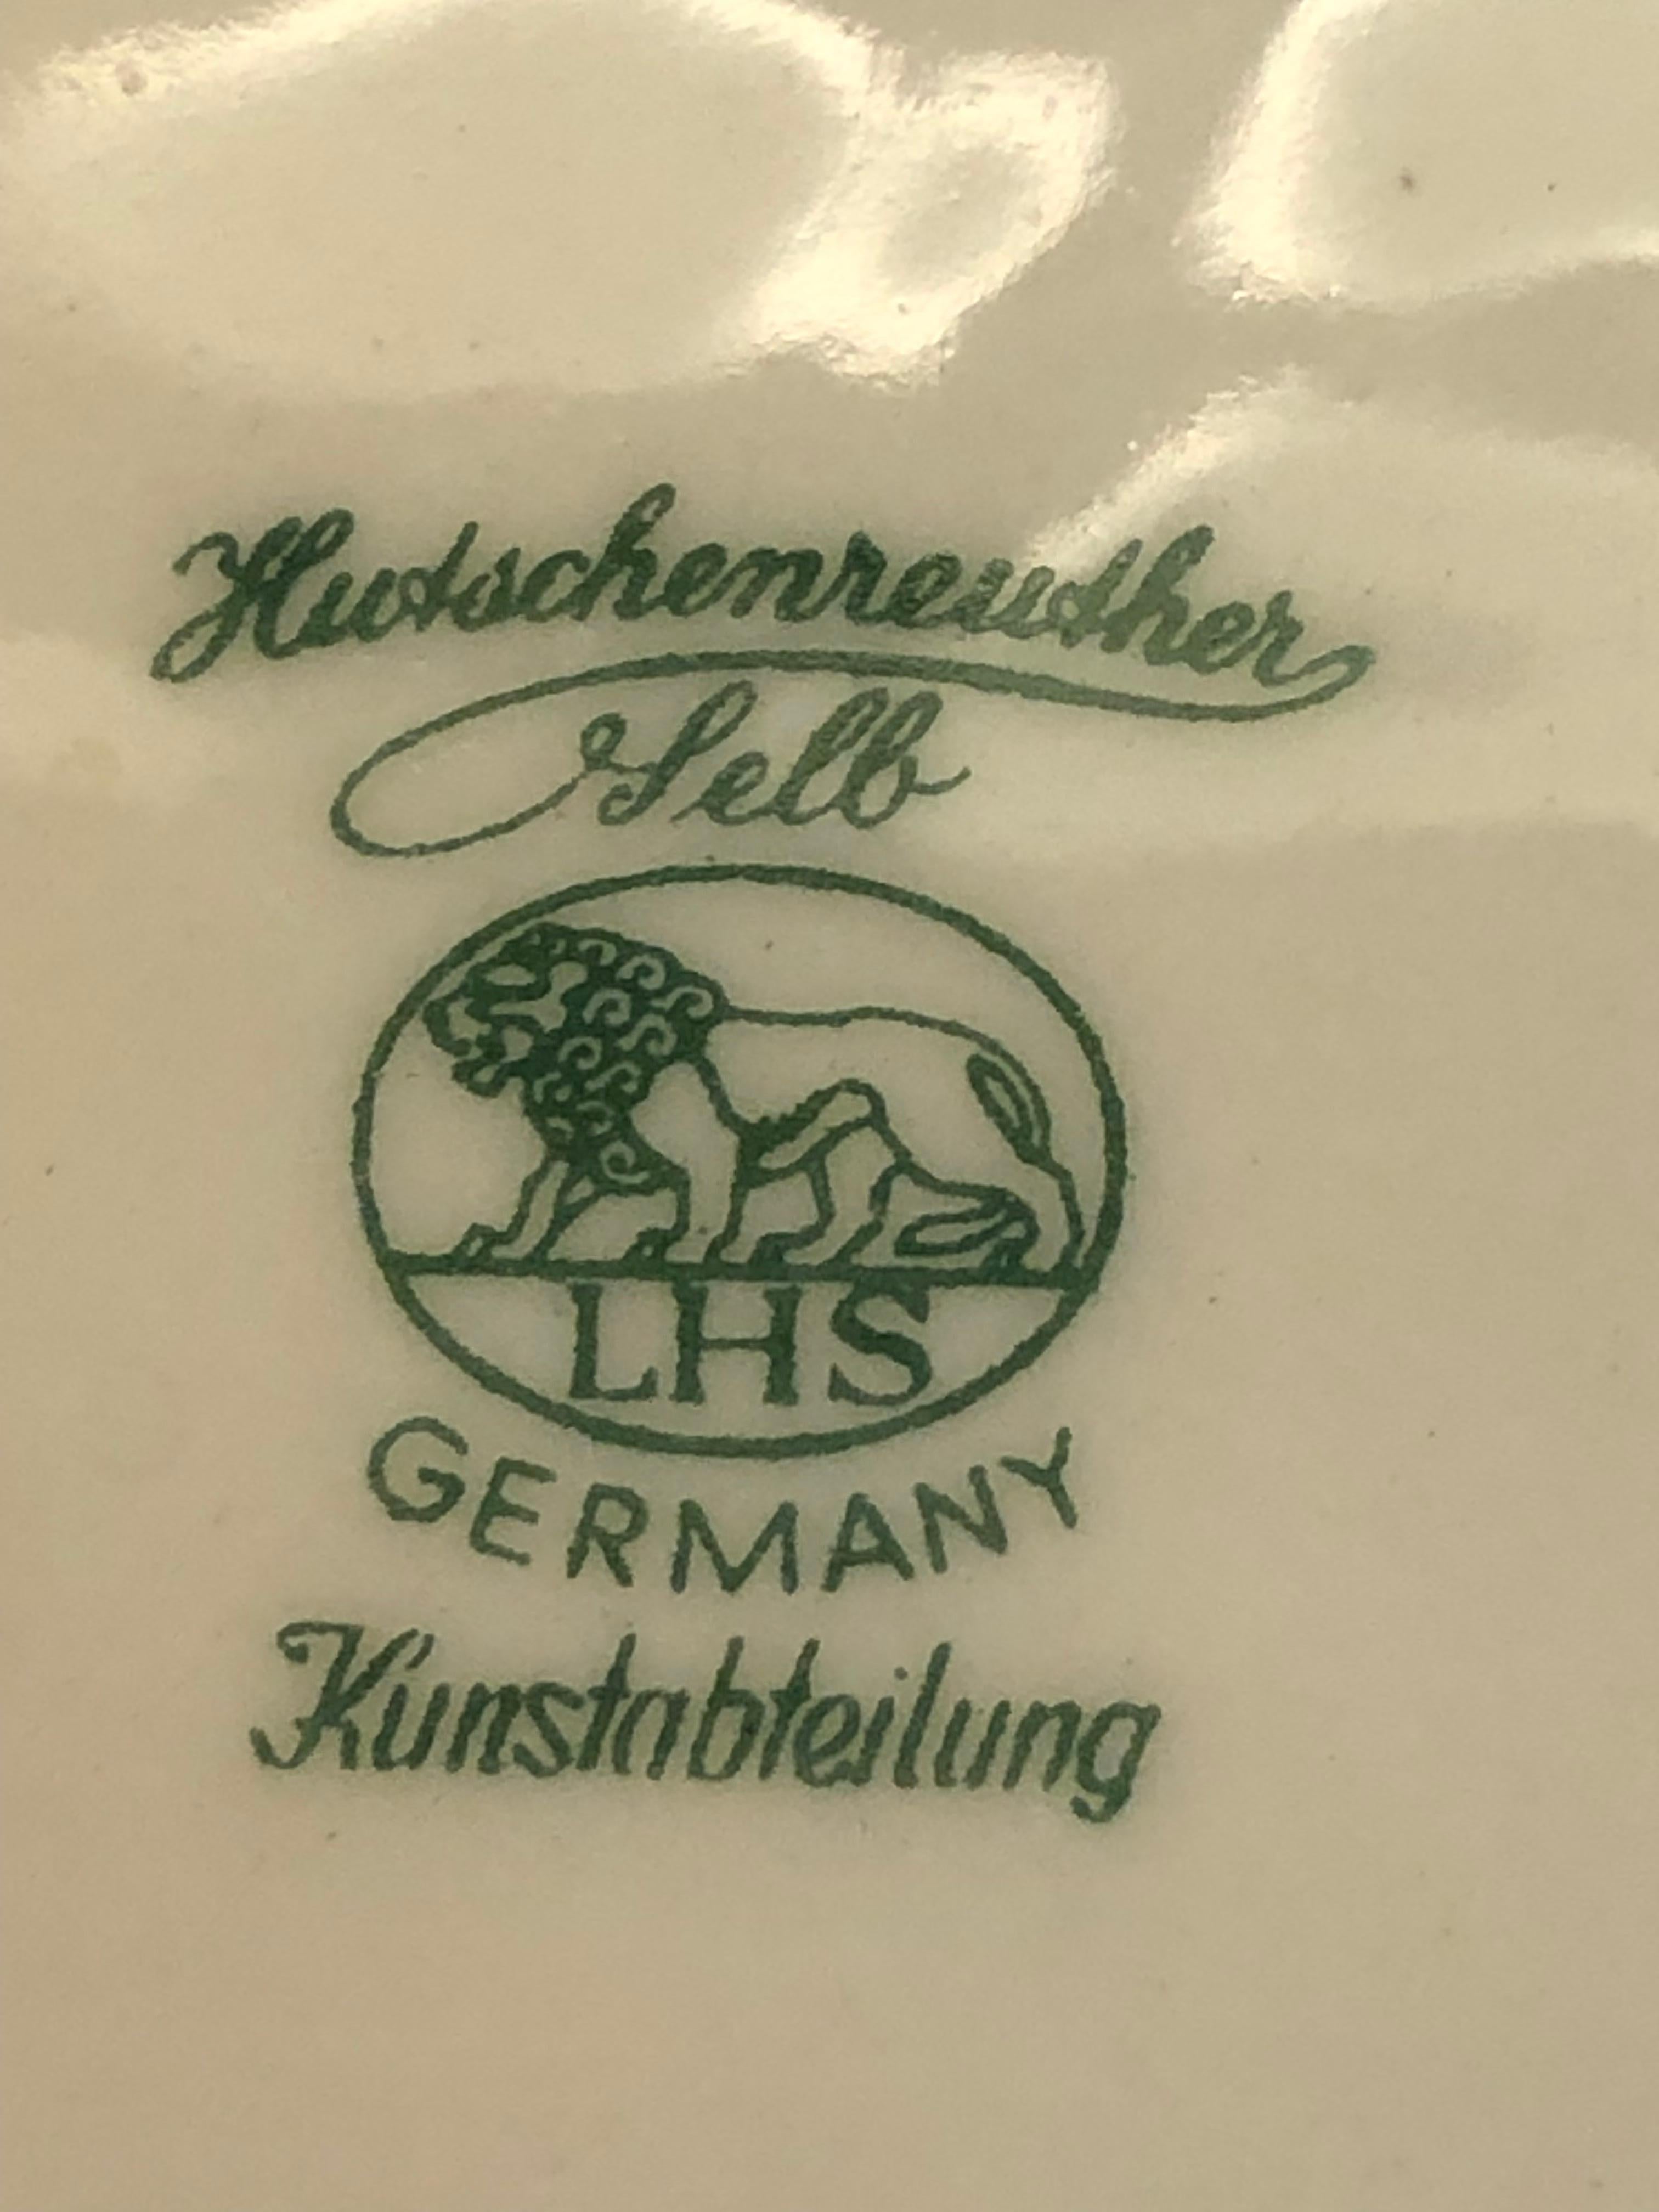 Signe :
Hutschenreuther
Selb
LHS
Kunstabteilung
-------------------
Hutschenreuther
Kunstabteilung
1722/1 Selb
--------------------------------------
La manufacture de porcelaine Hutschenreuther a commencé à produire en 1814. Elle a été créée par